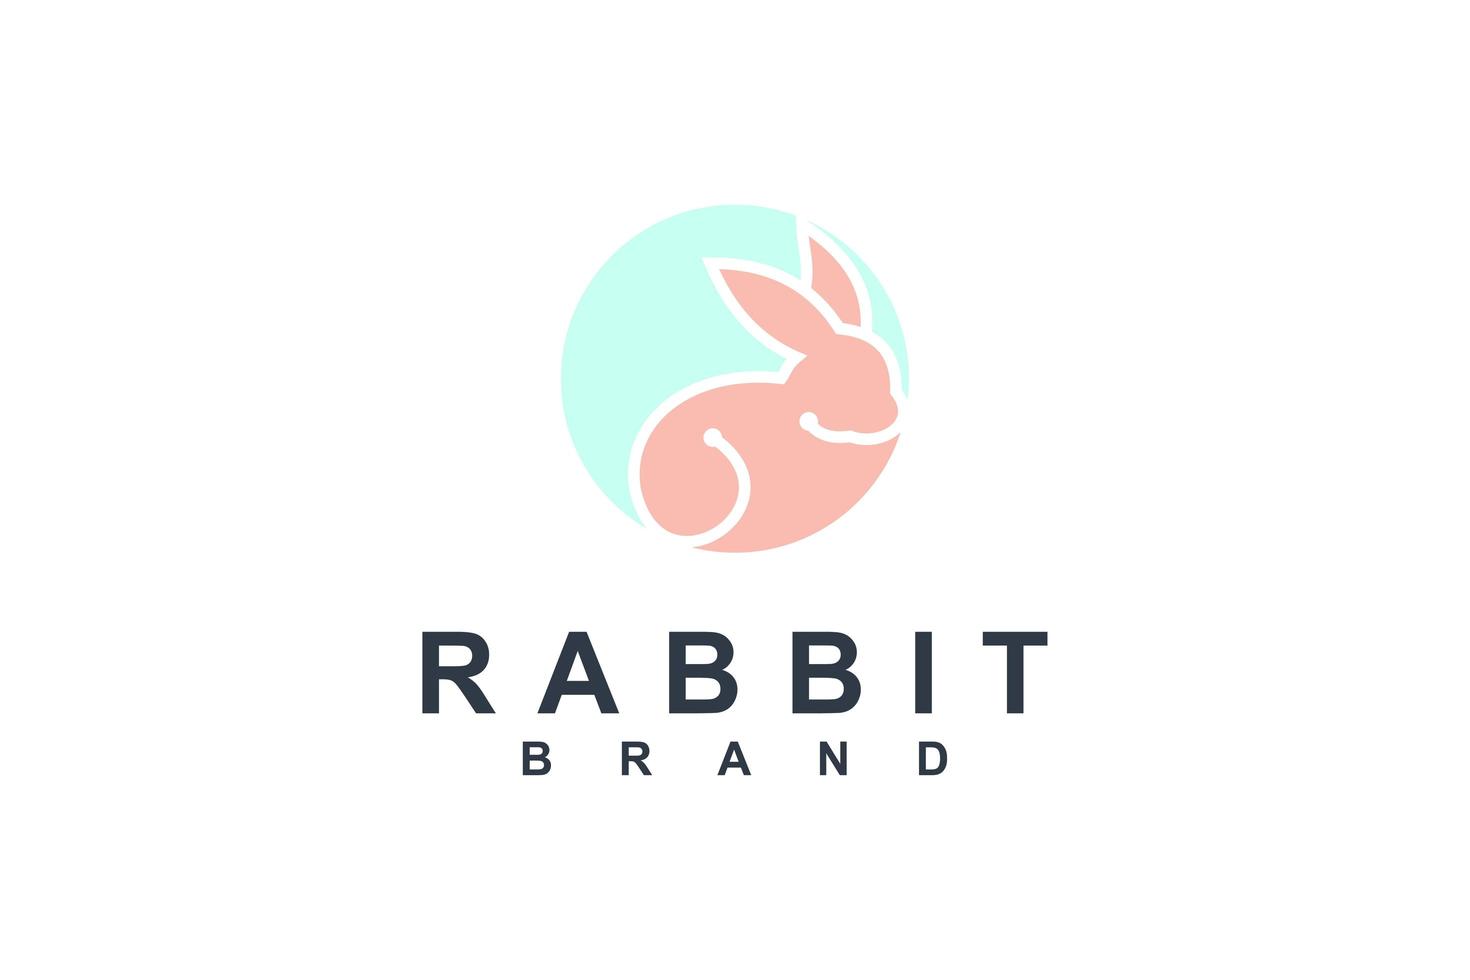 Ilustración de icono de vector de diseño de plantilla de logotipo de conejo